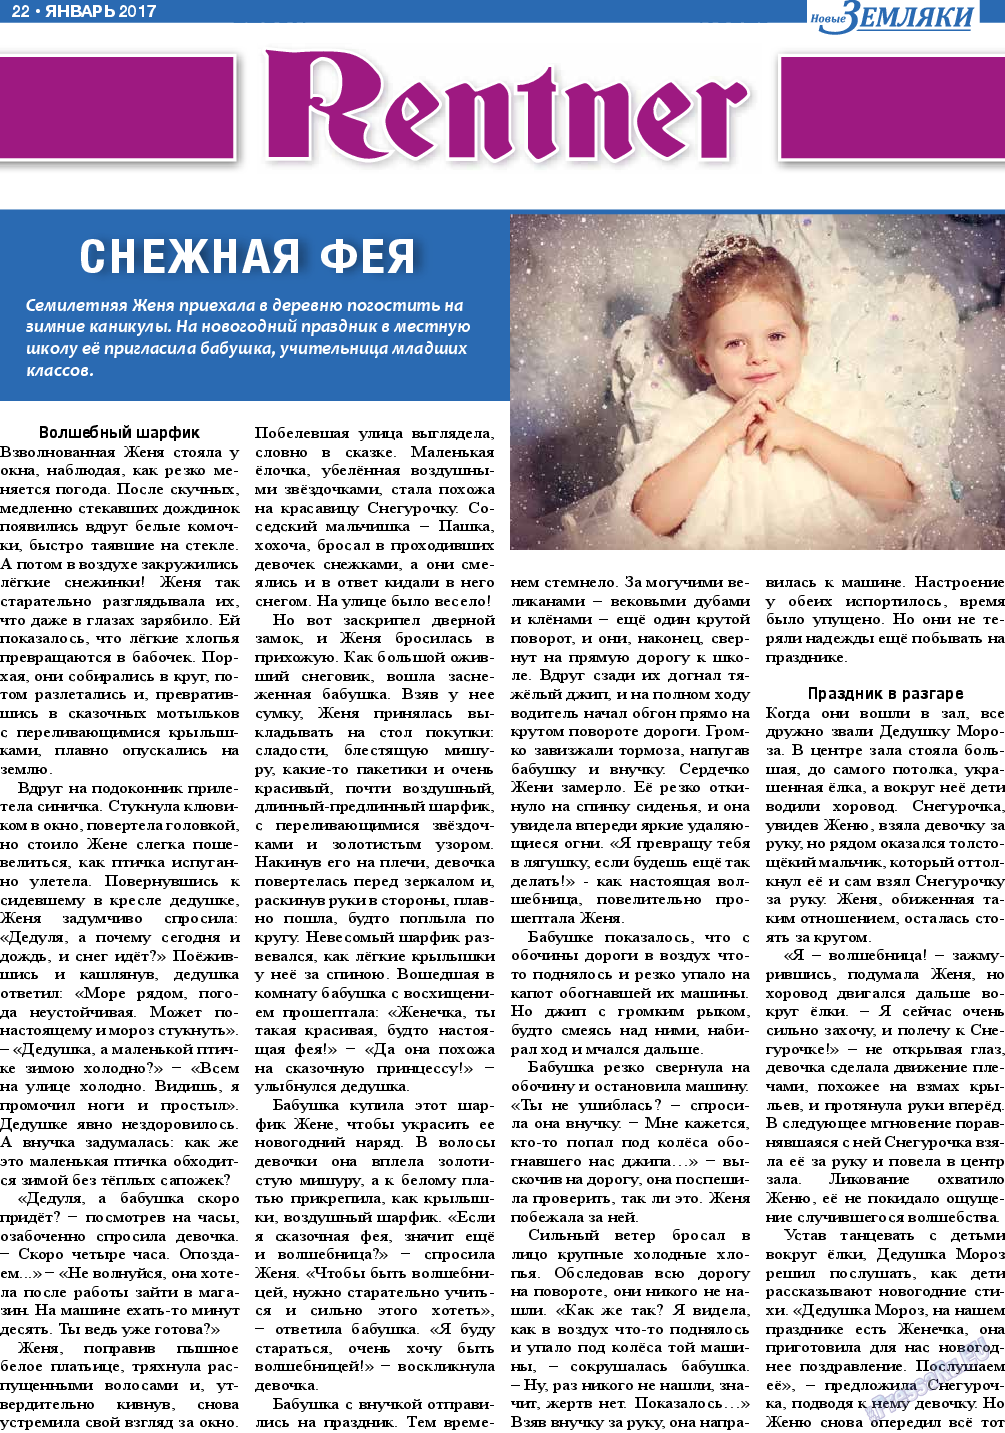 Новые Земляки, газета. 2017 №1 стр.22